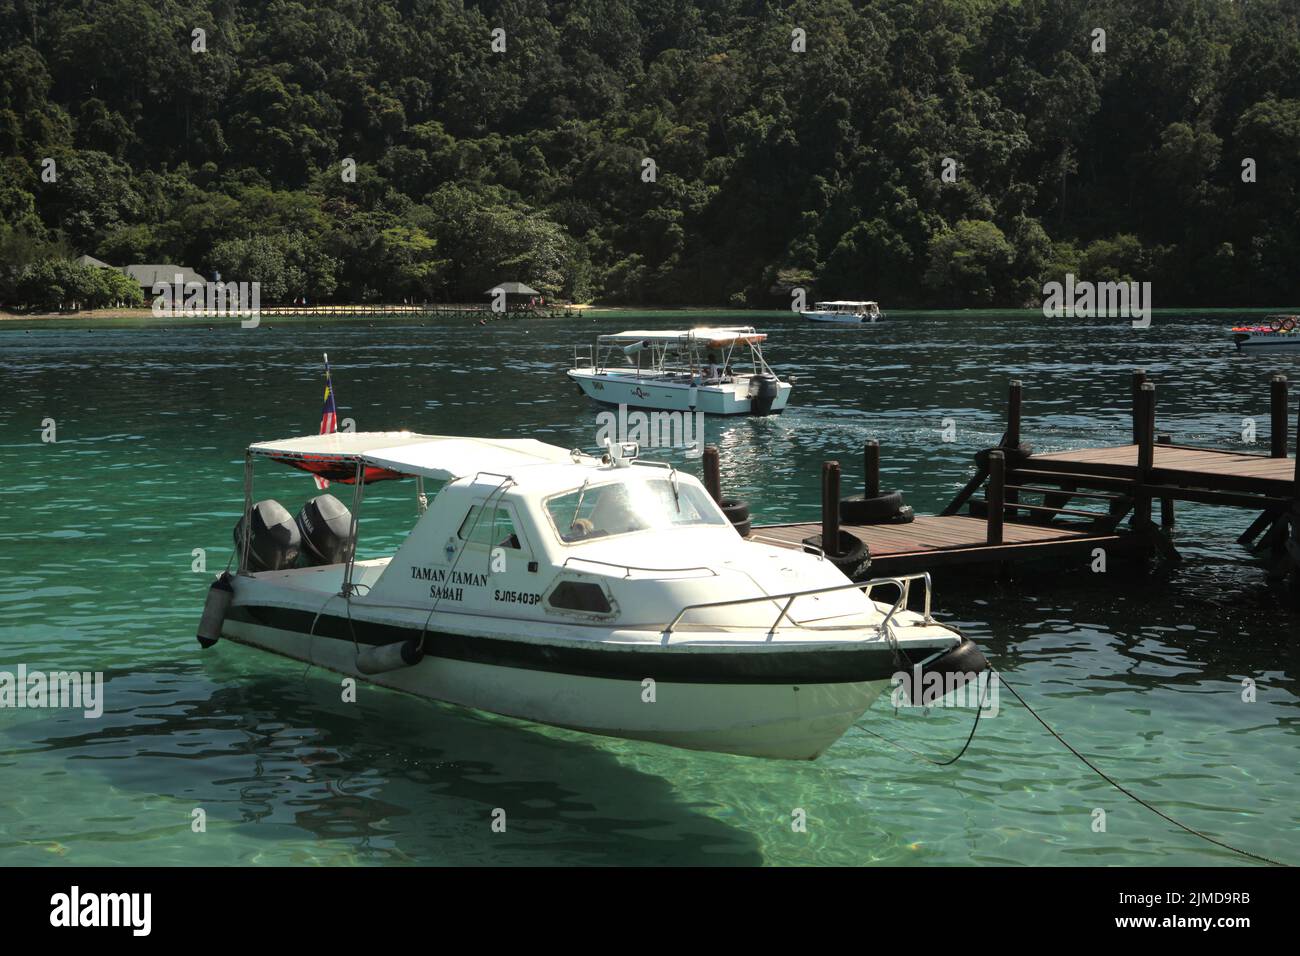 A tourist boat on the coastal water of Pulau Sapi (Sapi Island), a part of Tunku Abdul Rahman Park in Sabah, Malaysia. Stock Photo